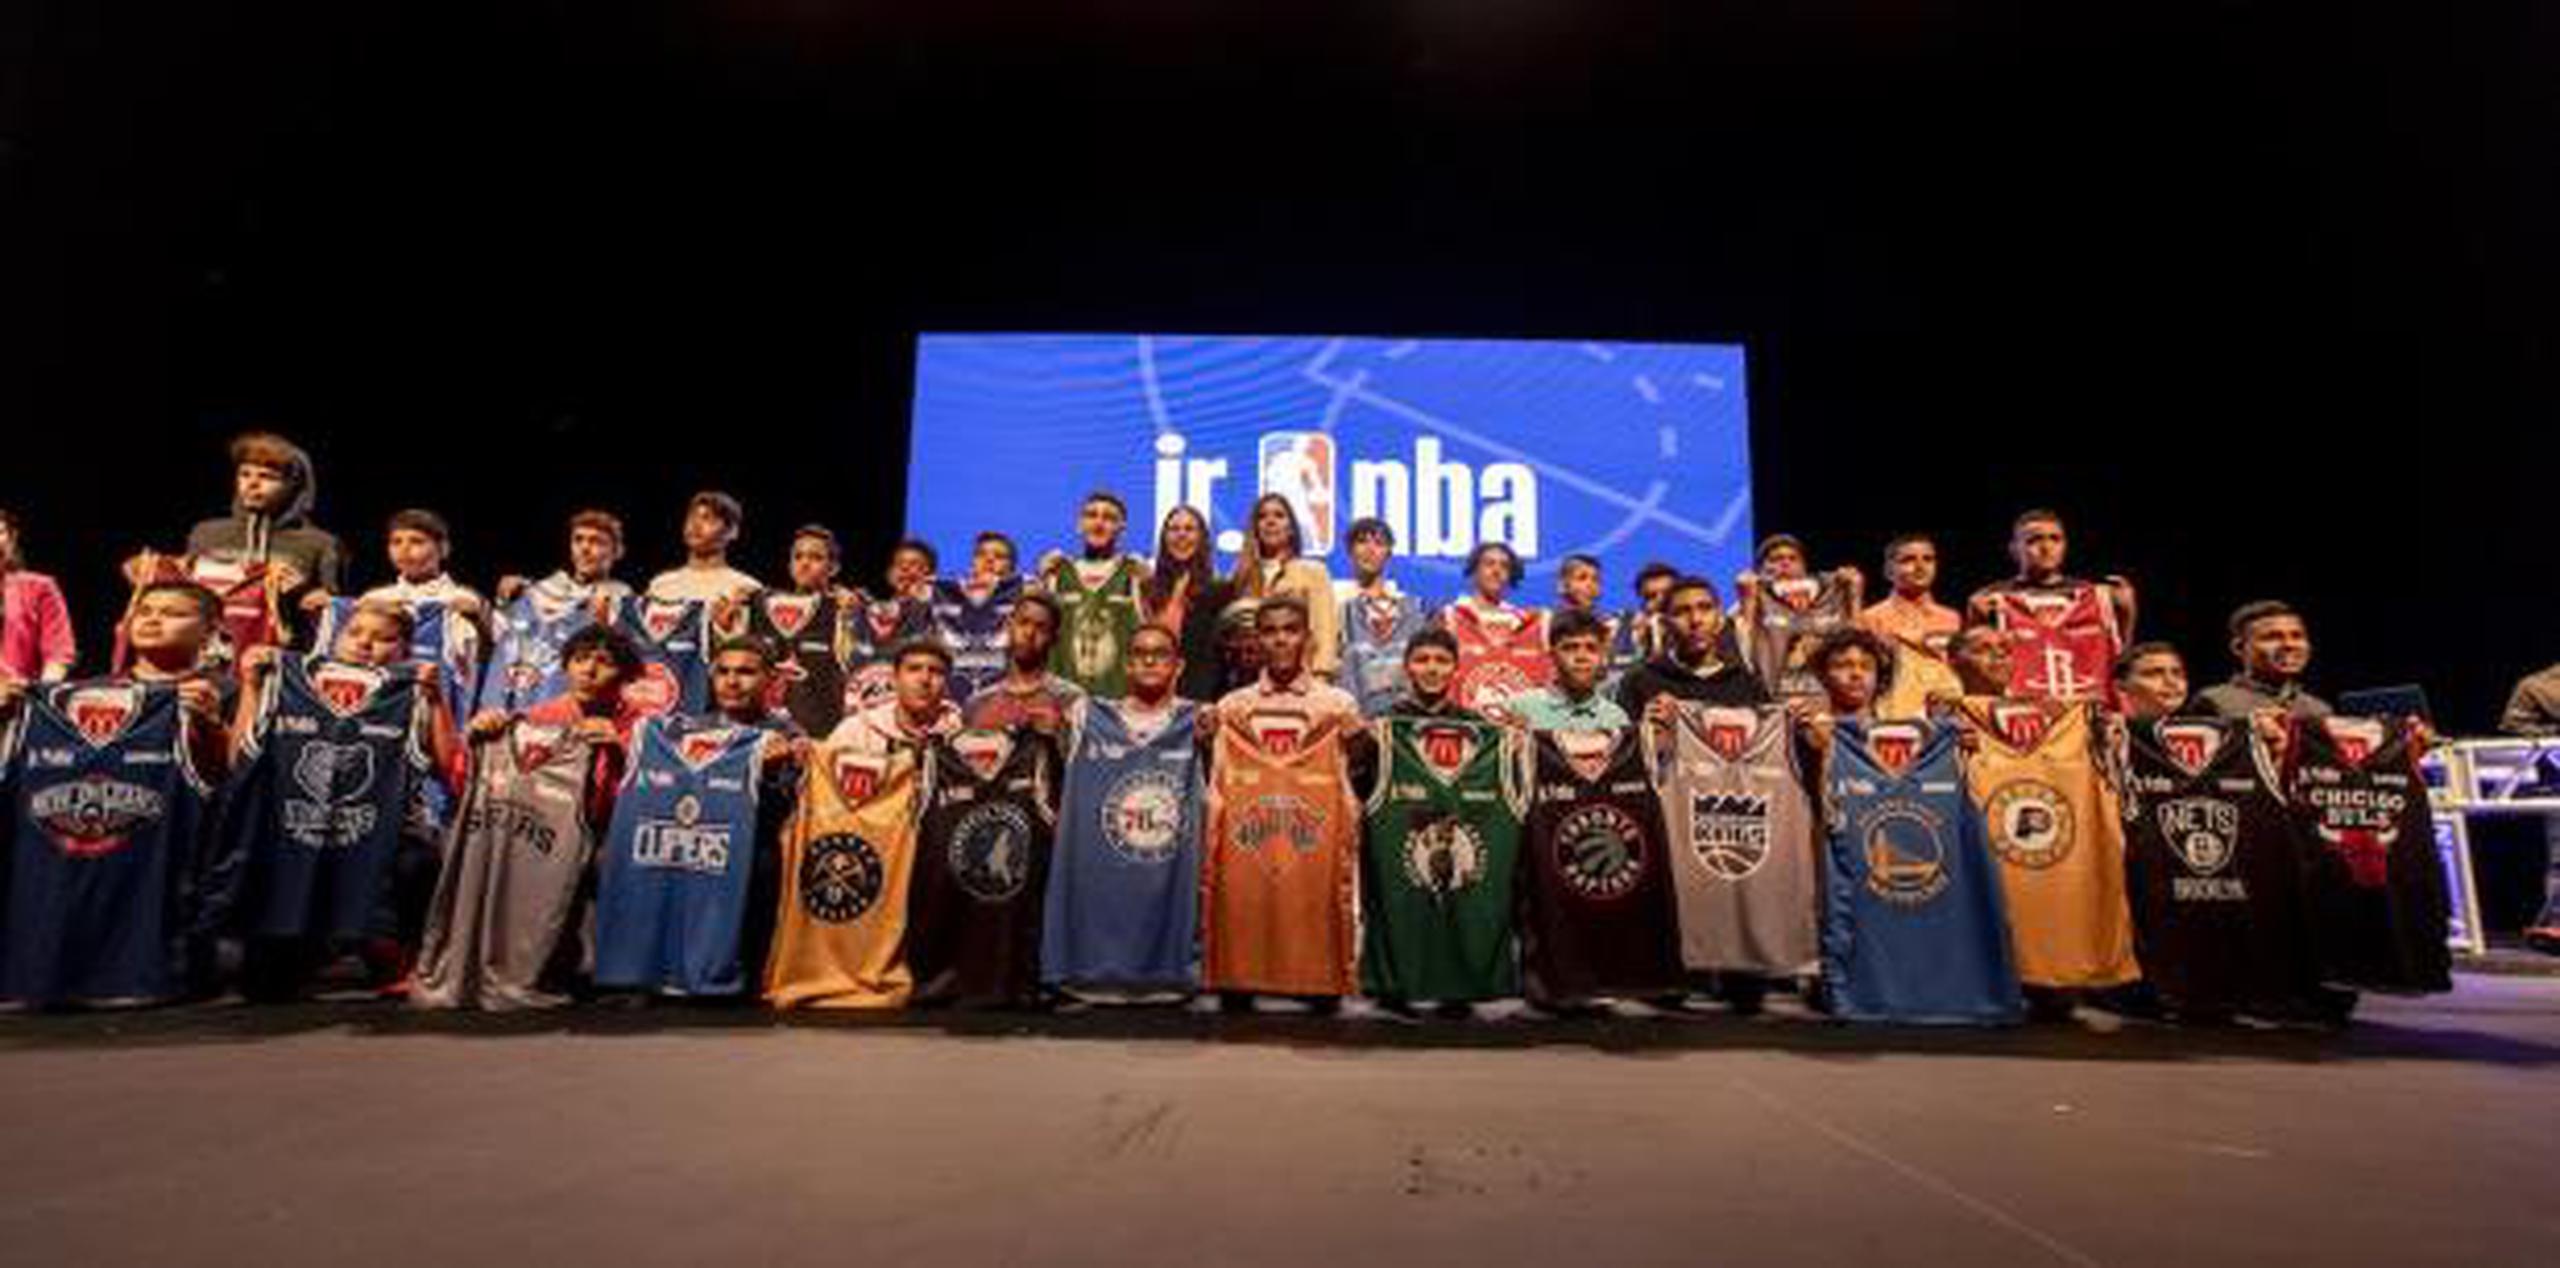 En el torneo participarán 30 equipos de cada rama, cada uno con un nombre de los equipos de la NBA. (Suministrada)